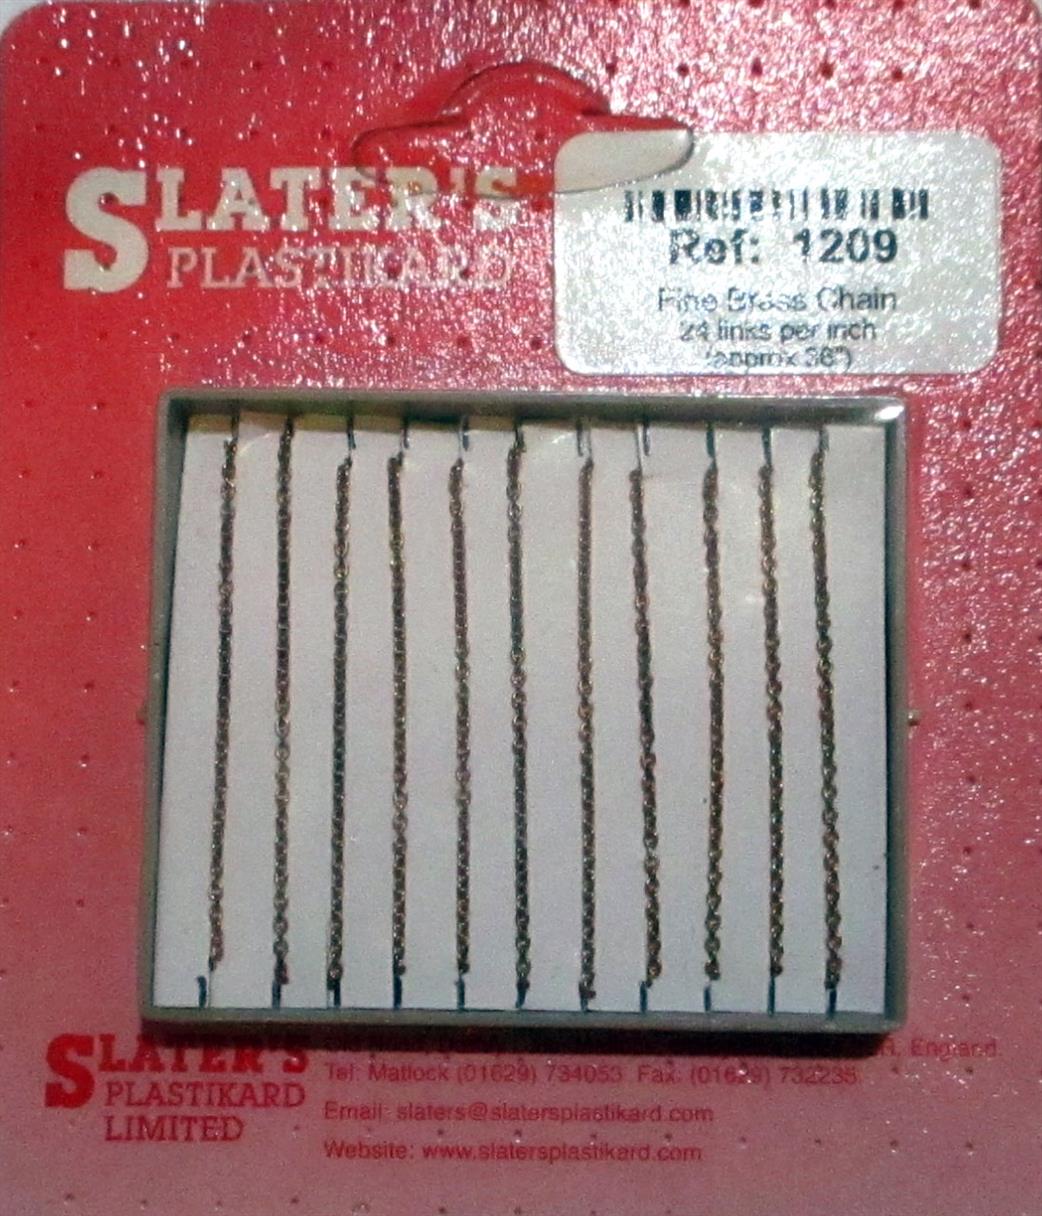 Slaters Plastikard  1209 Fine Chain 24 links per inch approx 36in